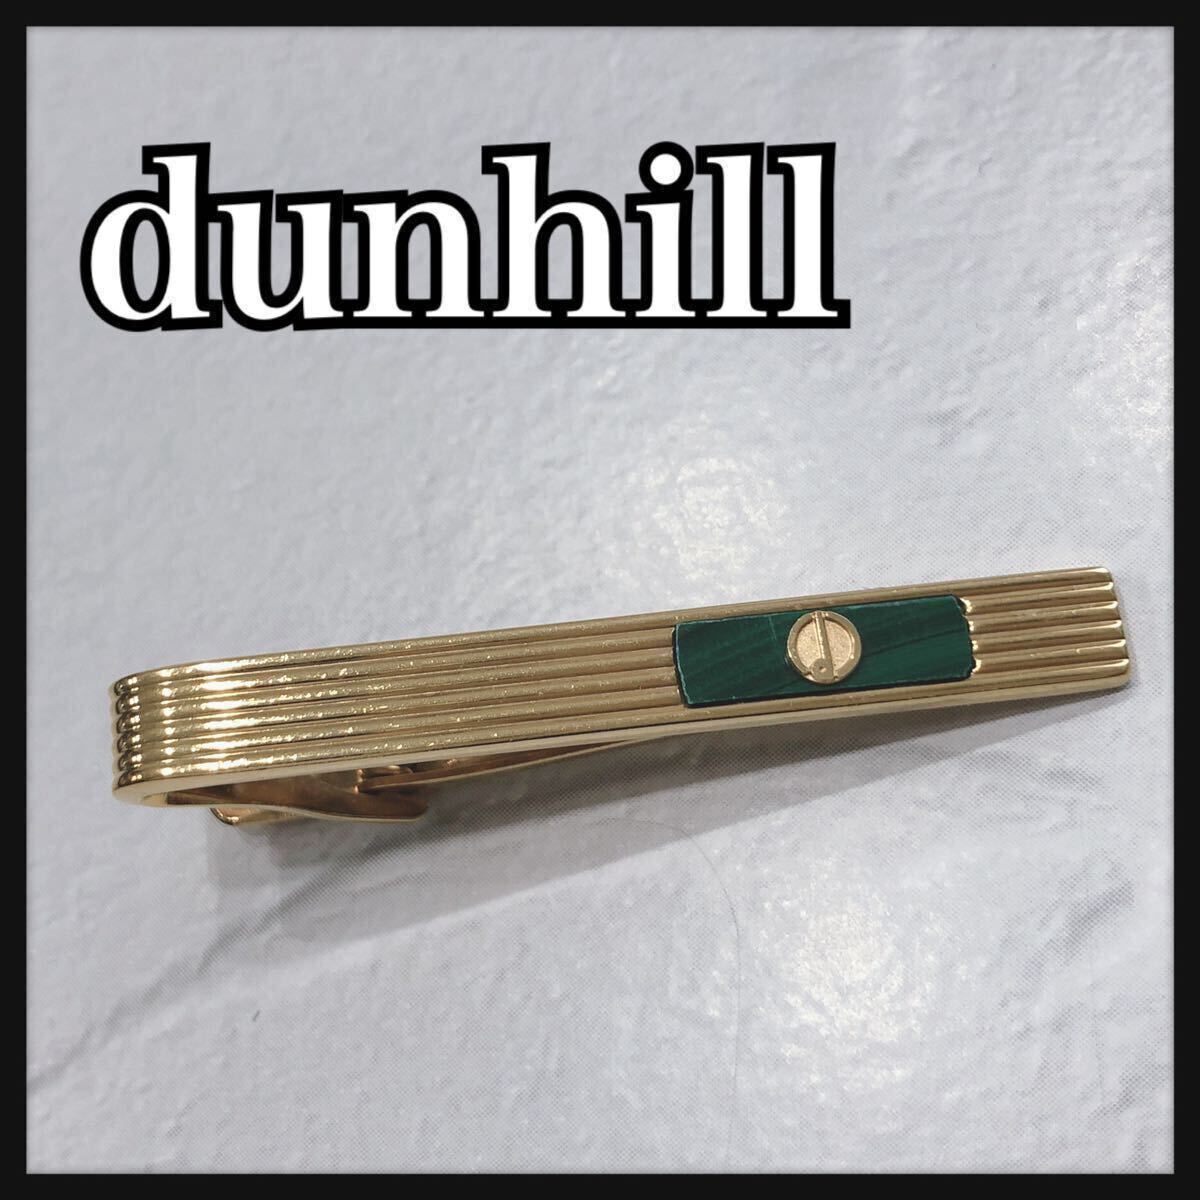 ☆ Dunhill ☆ Dunhill Type Type Pin Pin Pin Gold Green Men Men Men's Men's Men's Formal Suit